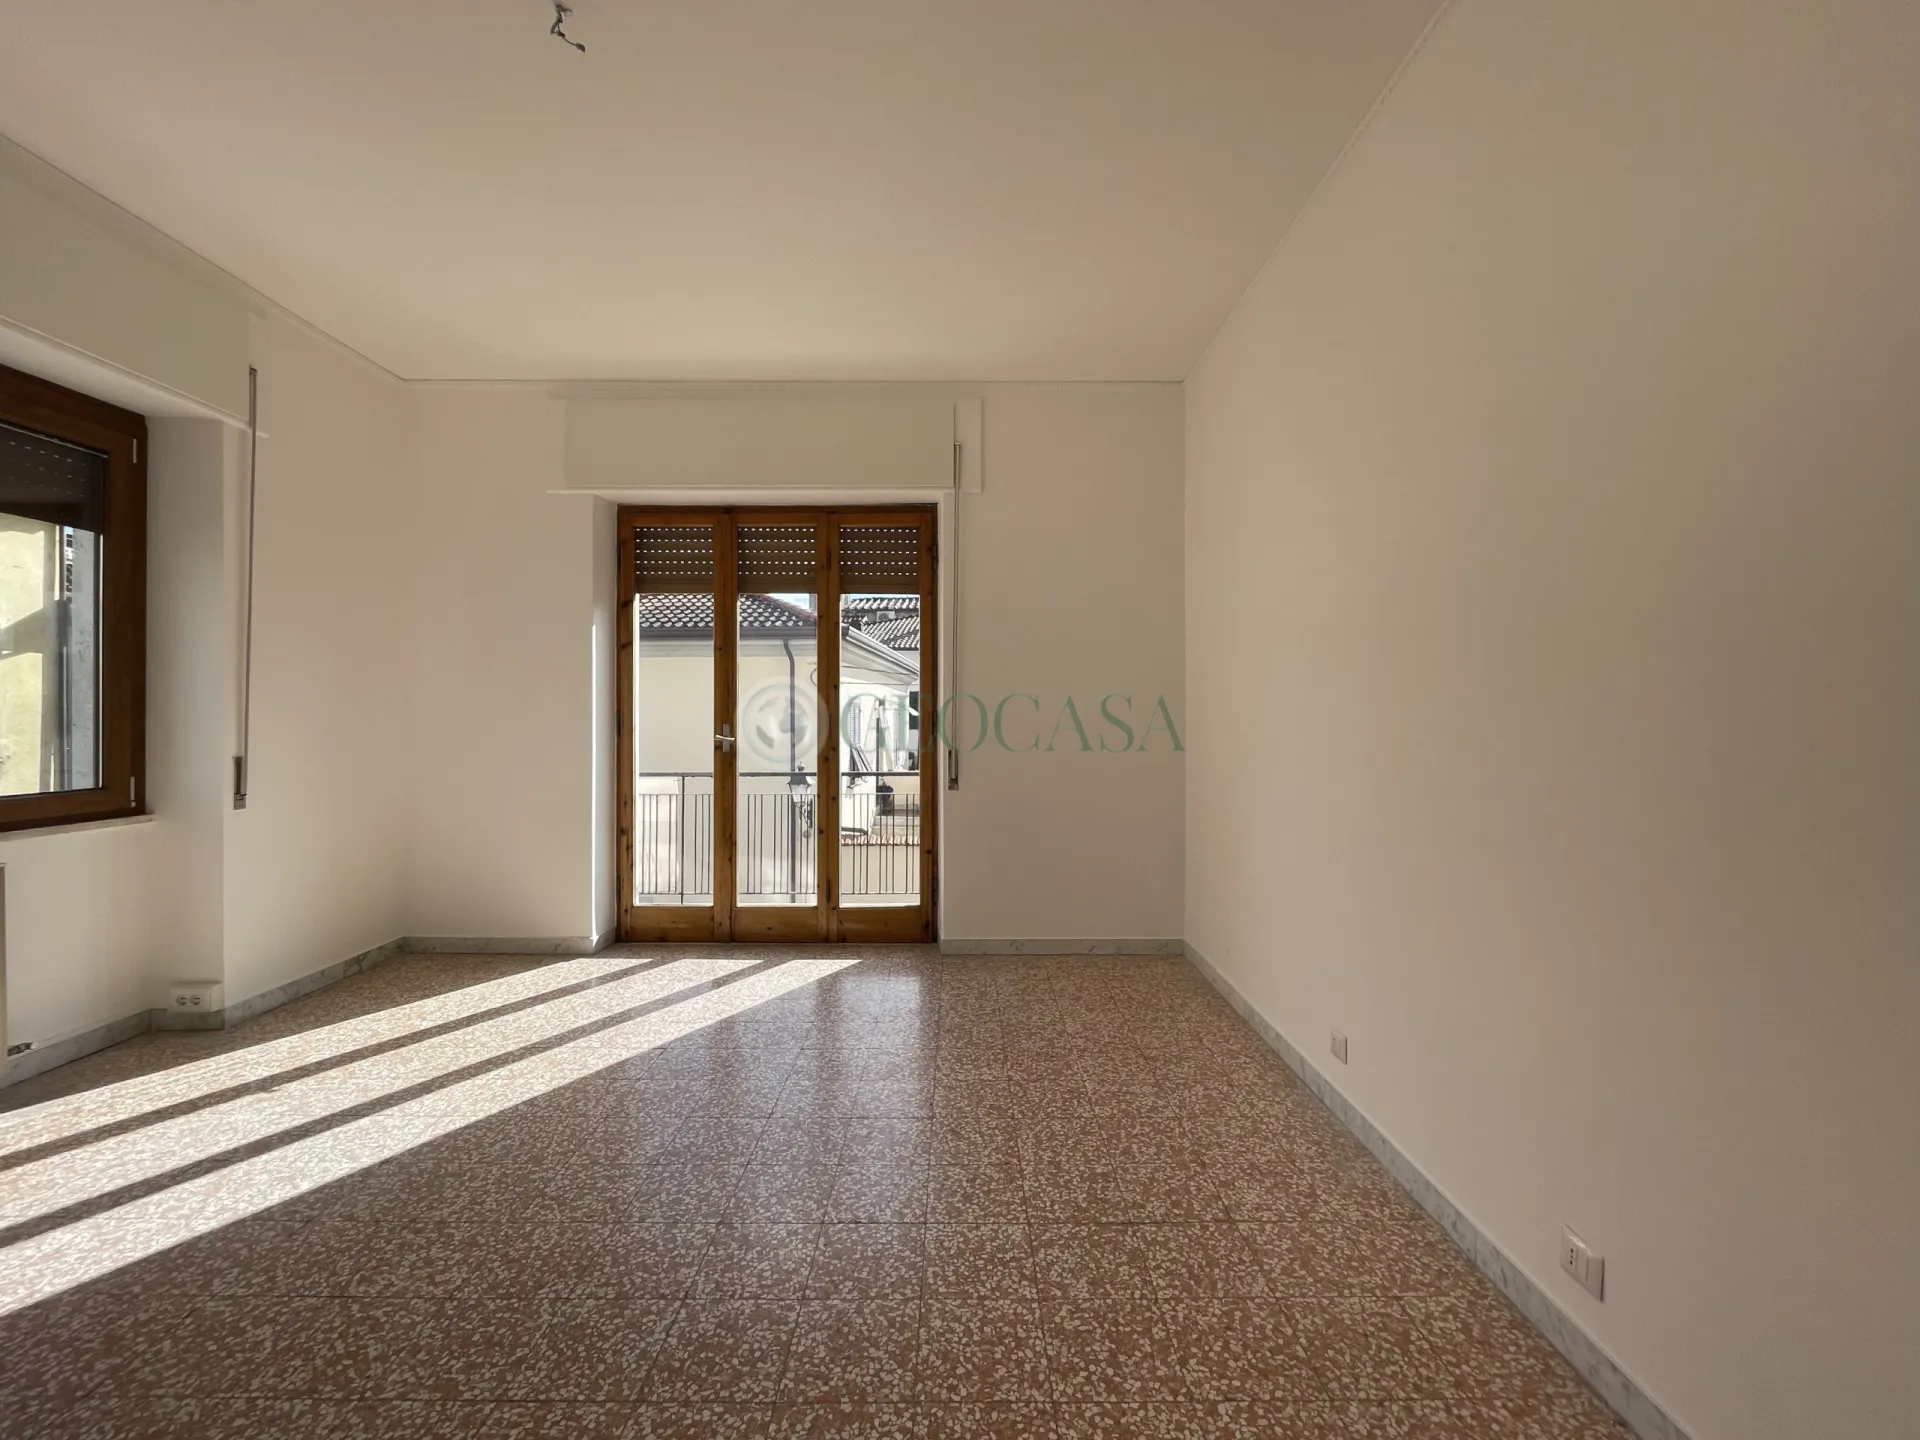 Immagine per Appartamento in vendita a Sarzana via Mazzini 44